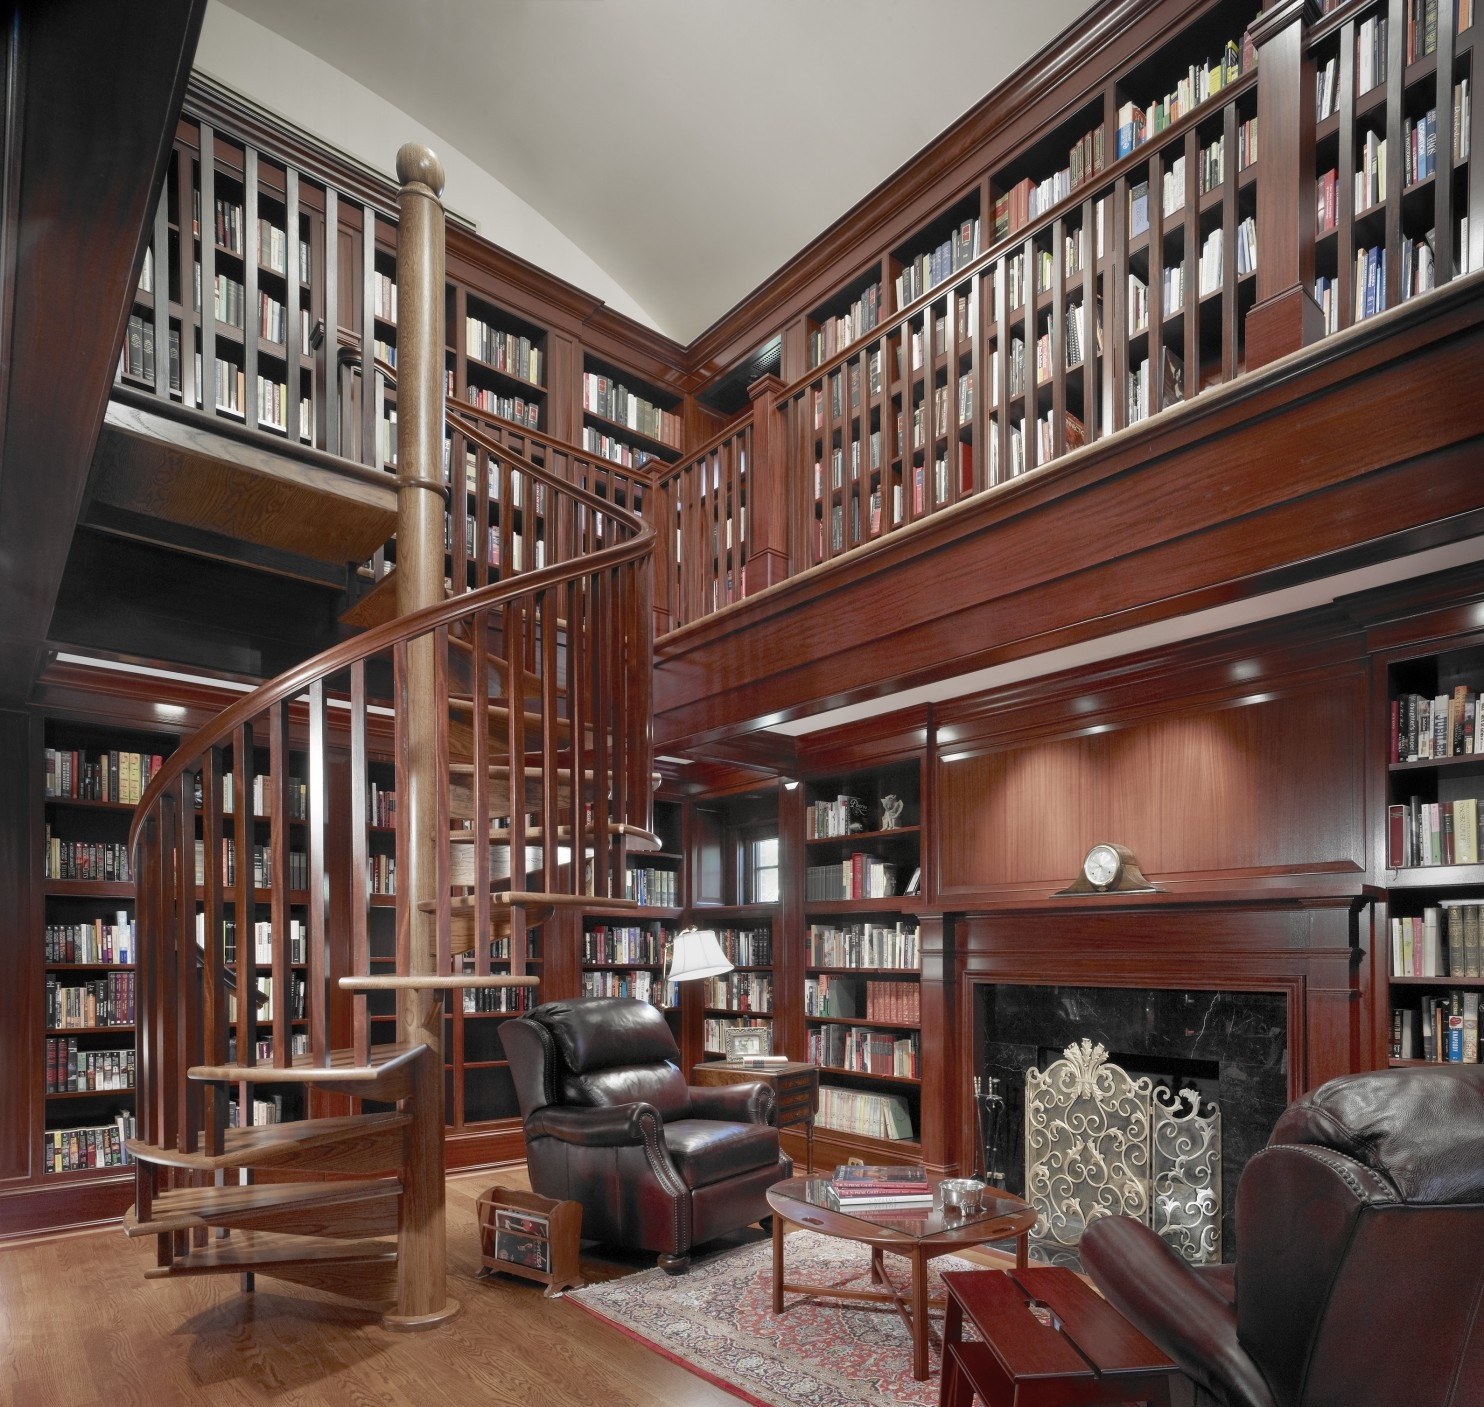 Attachment library. Библиотека в доме. Интерьер библиотеки. Библиотека с высокими потолками. Домашняя библиотека интерьер.